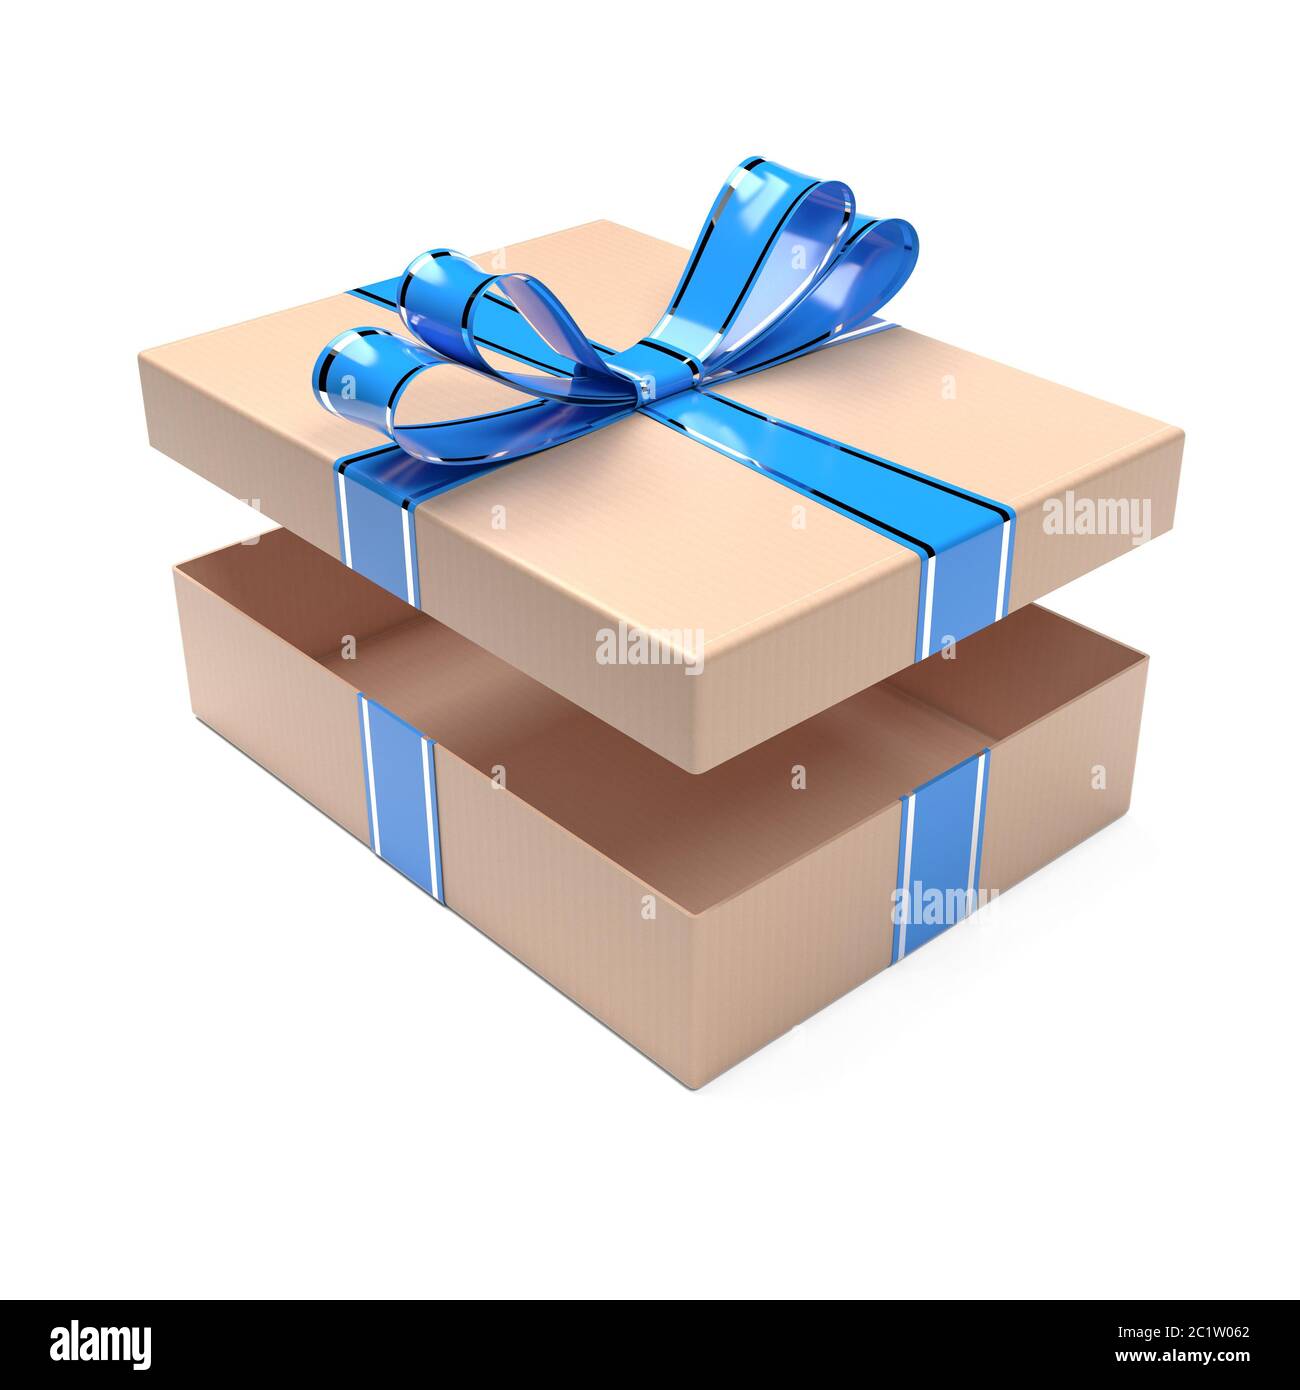 https://c8.alamy.com/compes/2c1w062/caja-de-regalo-decorada-con-cinta-azul-abra-el-carton-marron-vacio-ilustracion-de-representacion-3d-2c1w062.jpg